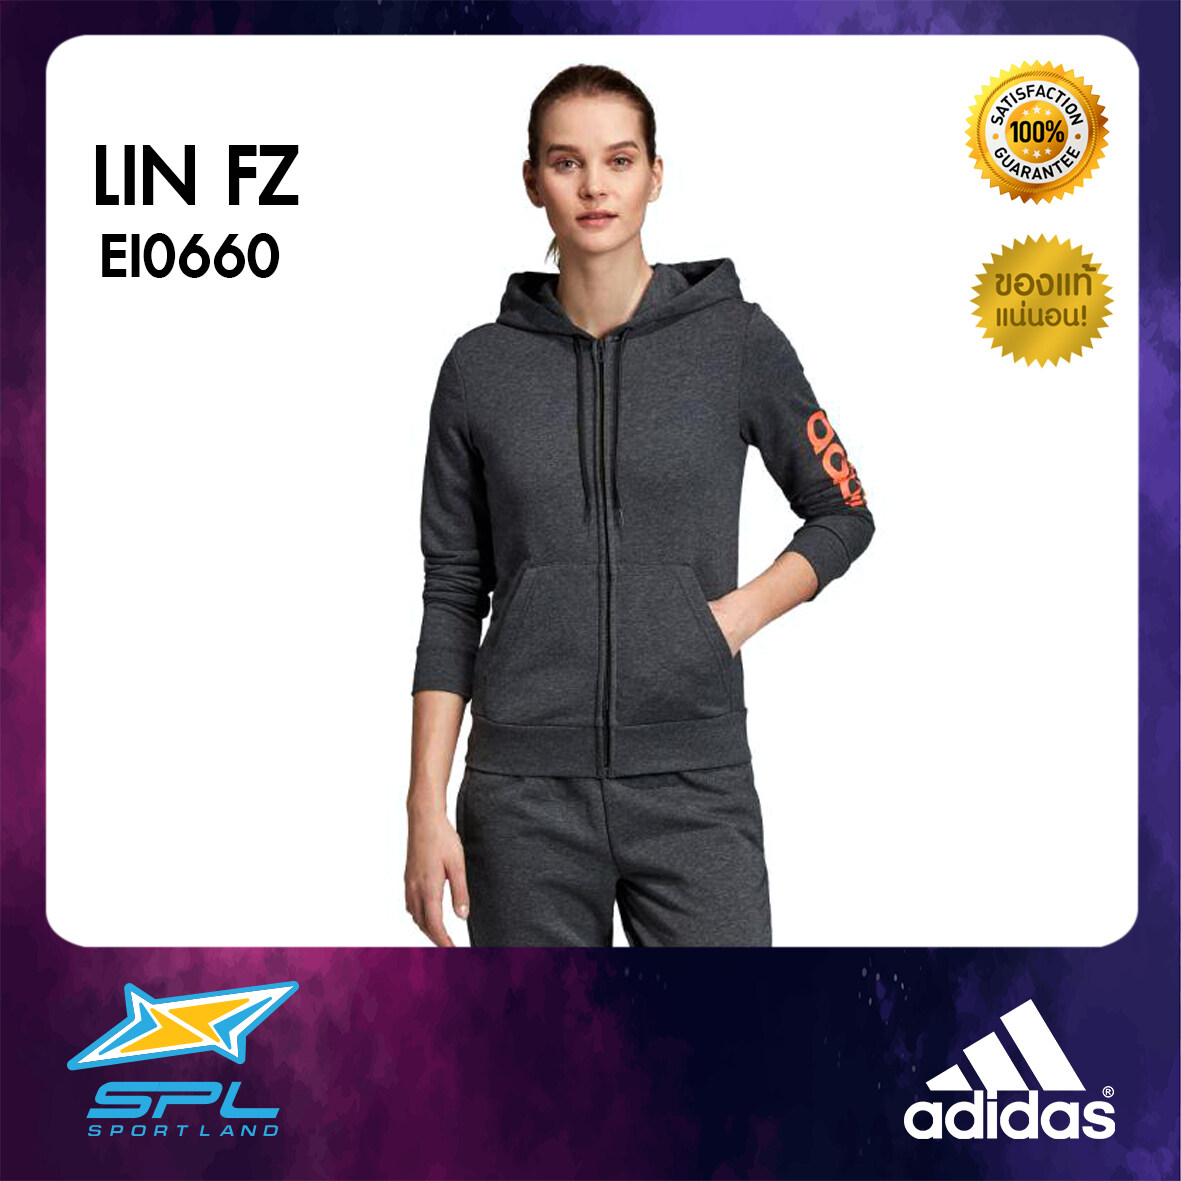 Adidas เสื้อฮู้ด เสื้อกันหนาว เสื้อออกกำลังกาย เสื้อกีฬา อาดิดาส AT Women JacketHoodieESS LIN FZ EI0660 GRY(1700)